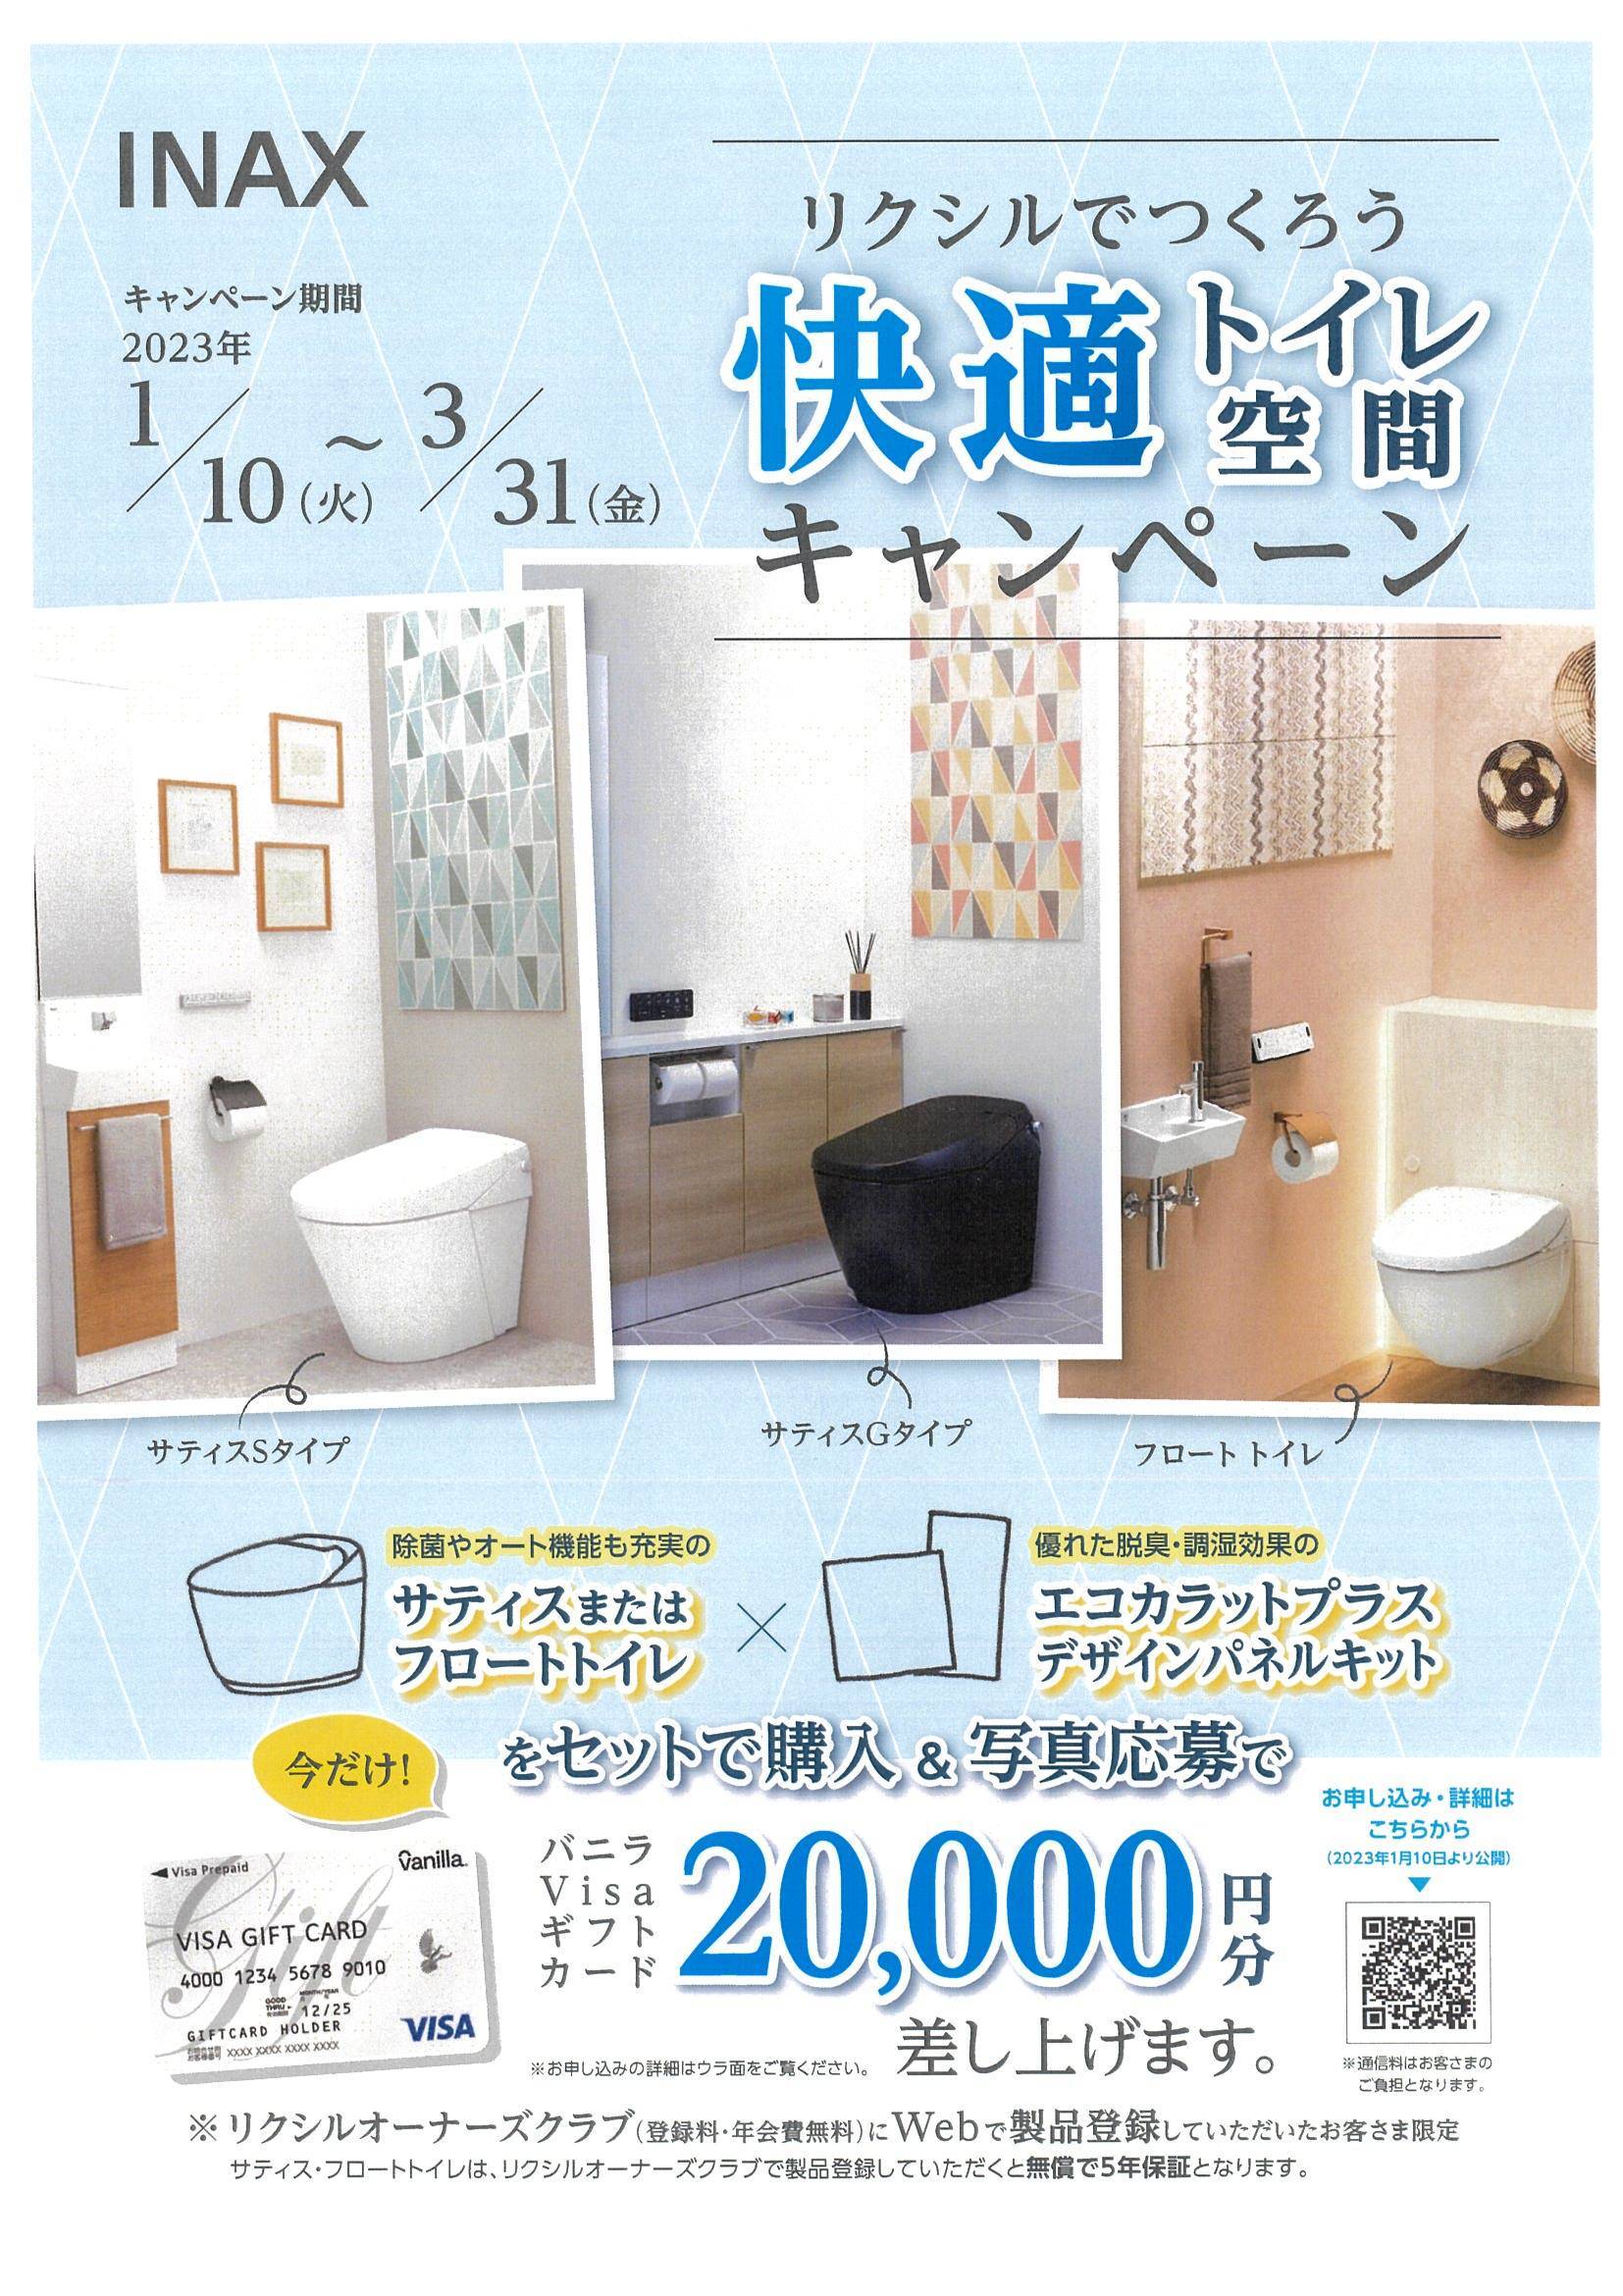 快適トイレ空間キャンペーン フジテックトーヨー住器のイベントキャンペーン 写真1